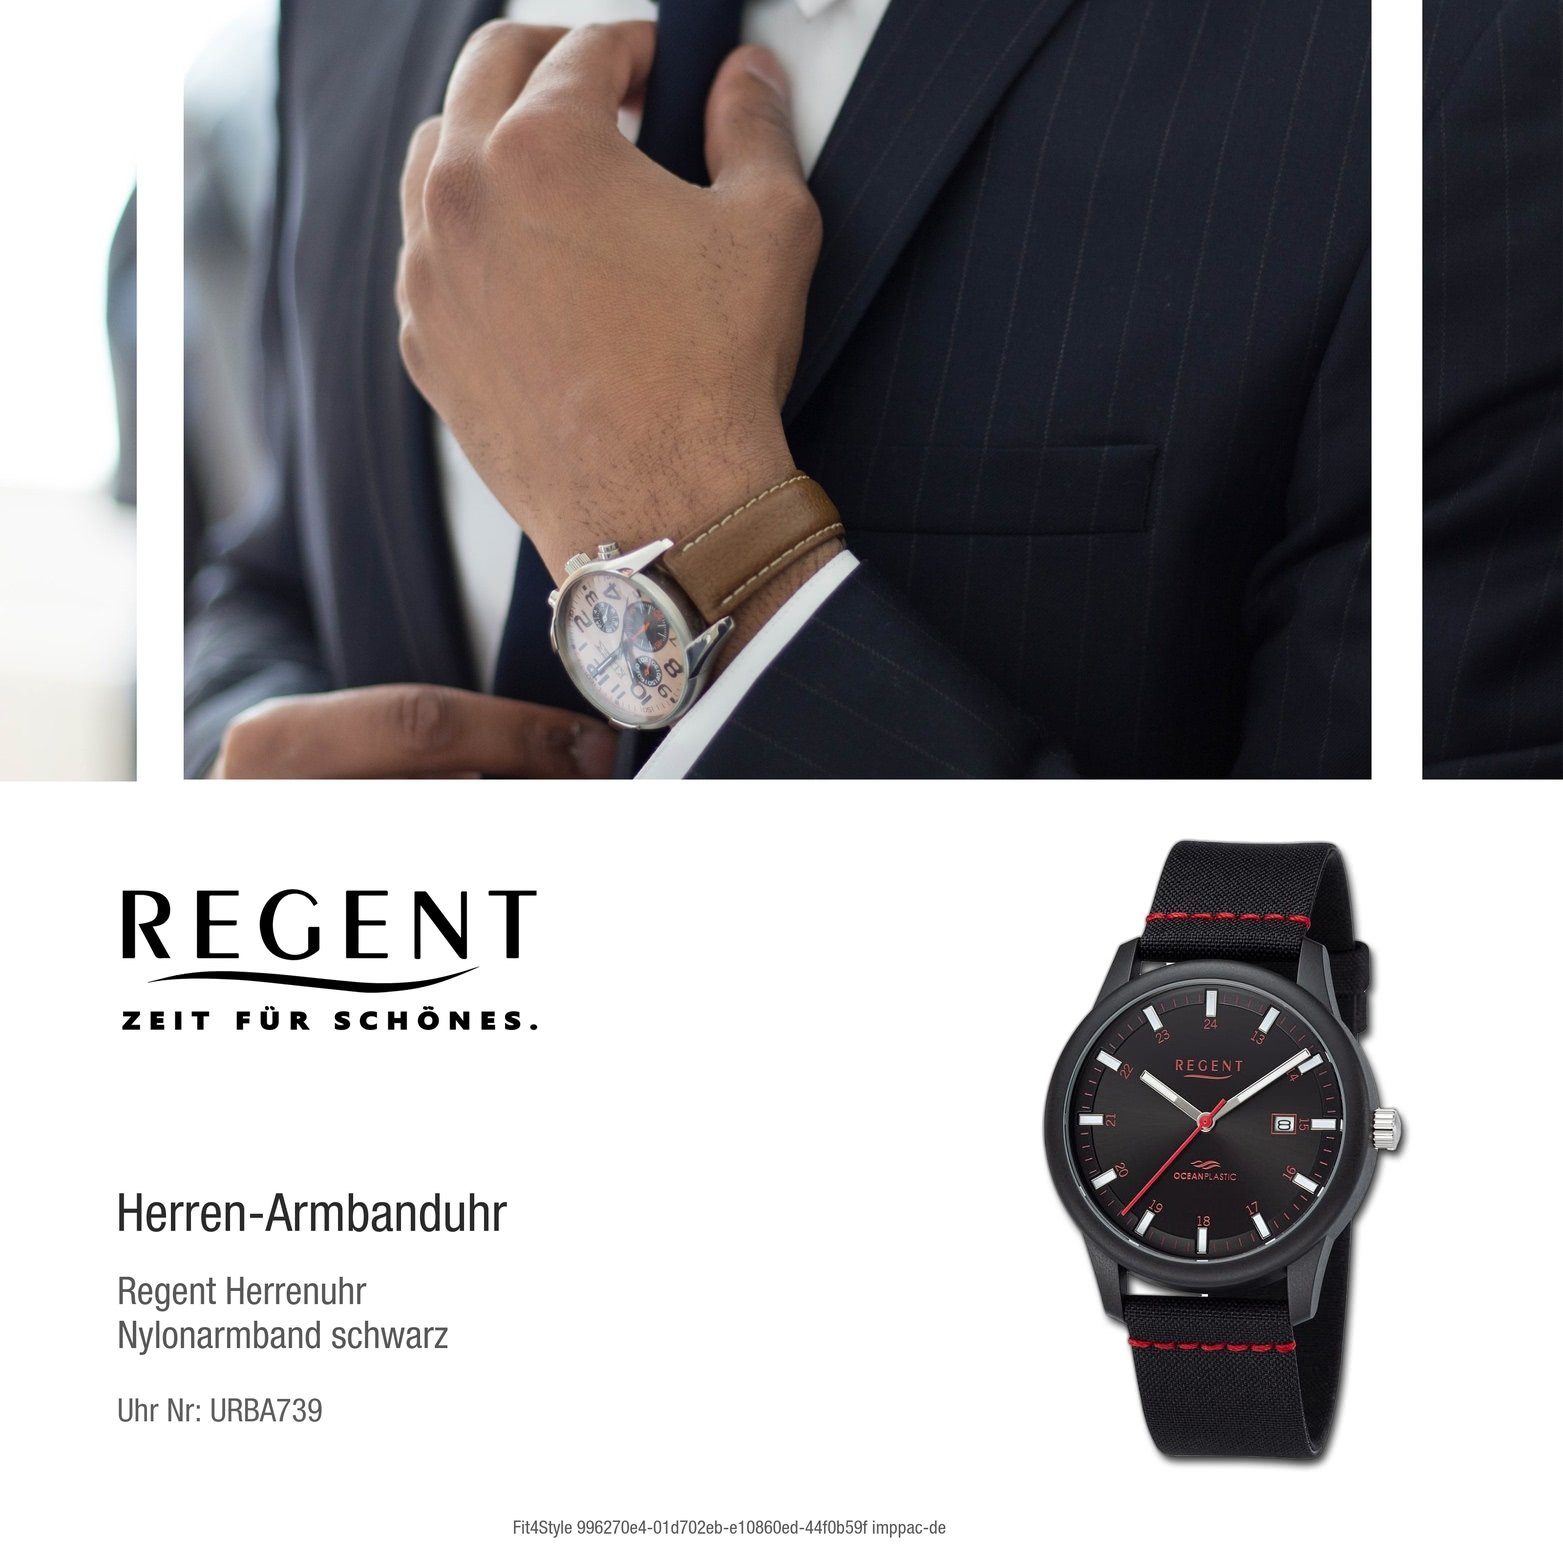 groß Regent Nylonarmband Gehäuse, Herren rundes Quarzuhr rot, Armbanduhr schwarz, Analog, Herrenuhr 40mm) (ca. Regent